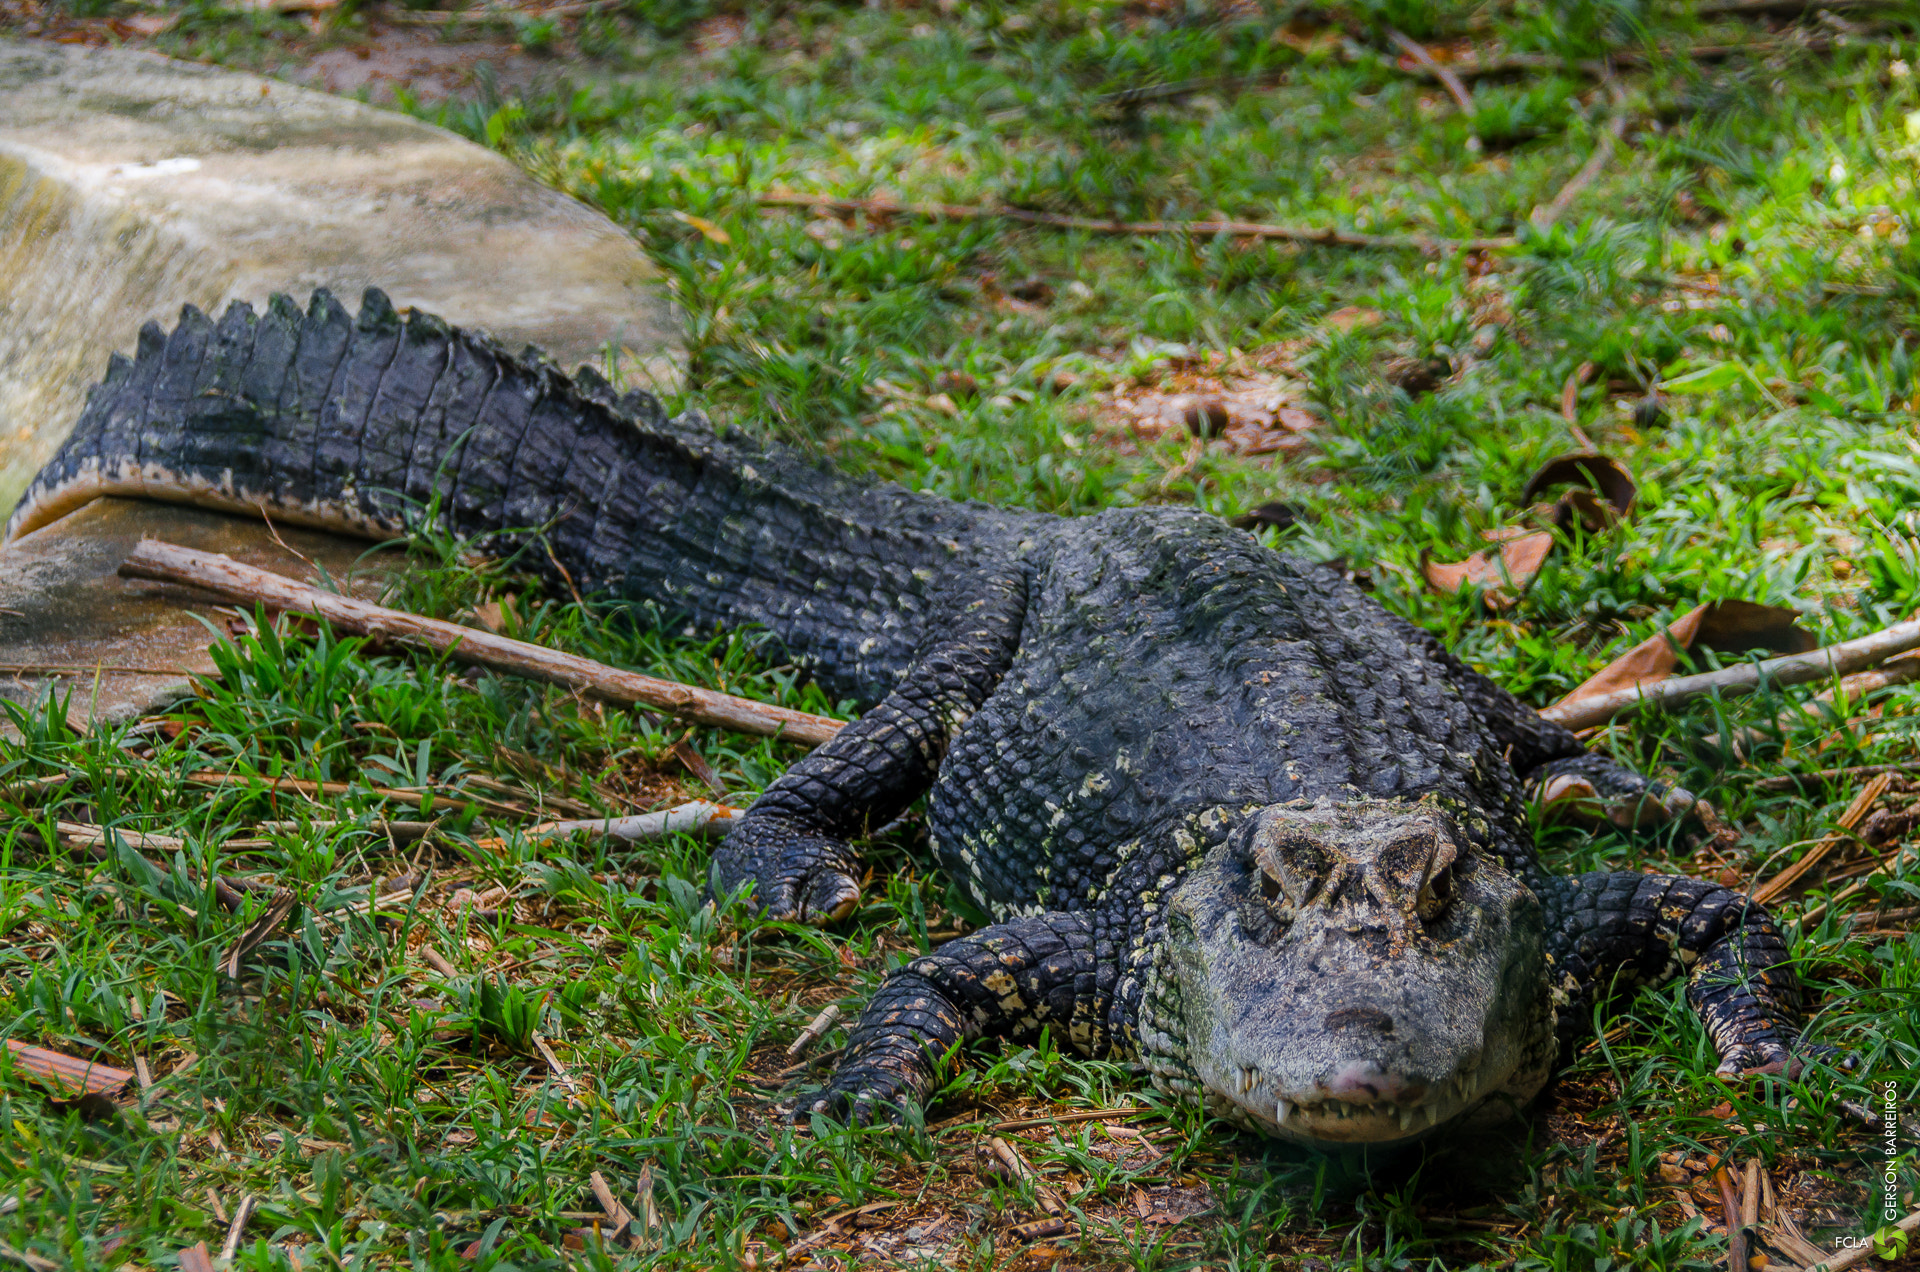 File:Alligator (41114520).jpeg - Wikimedia Commons